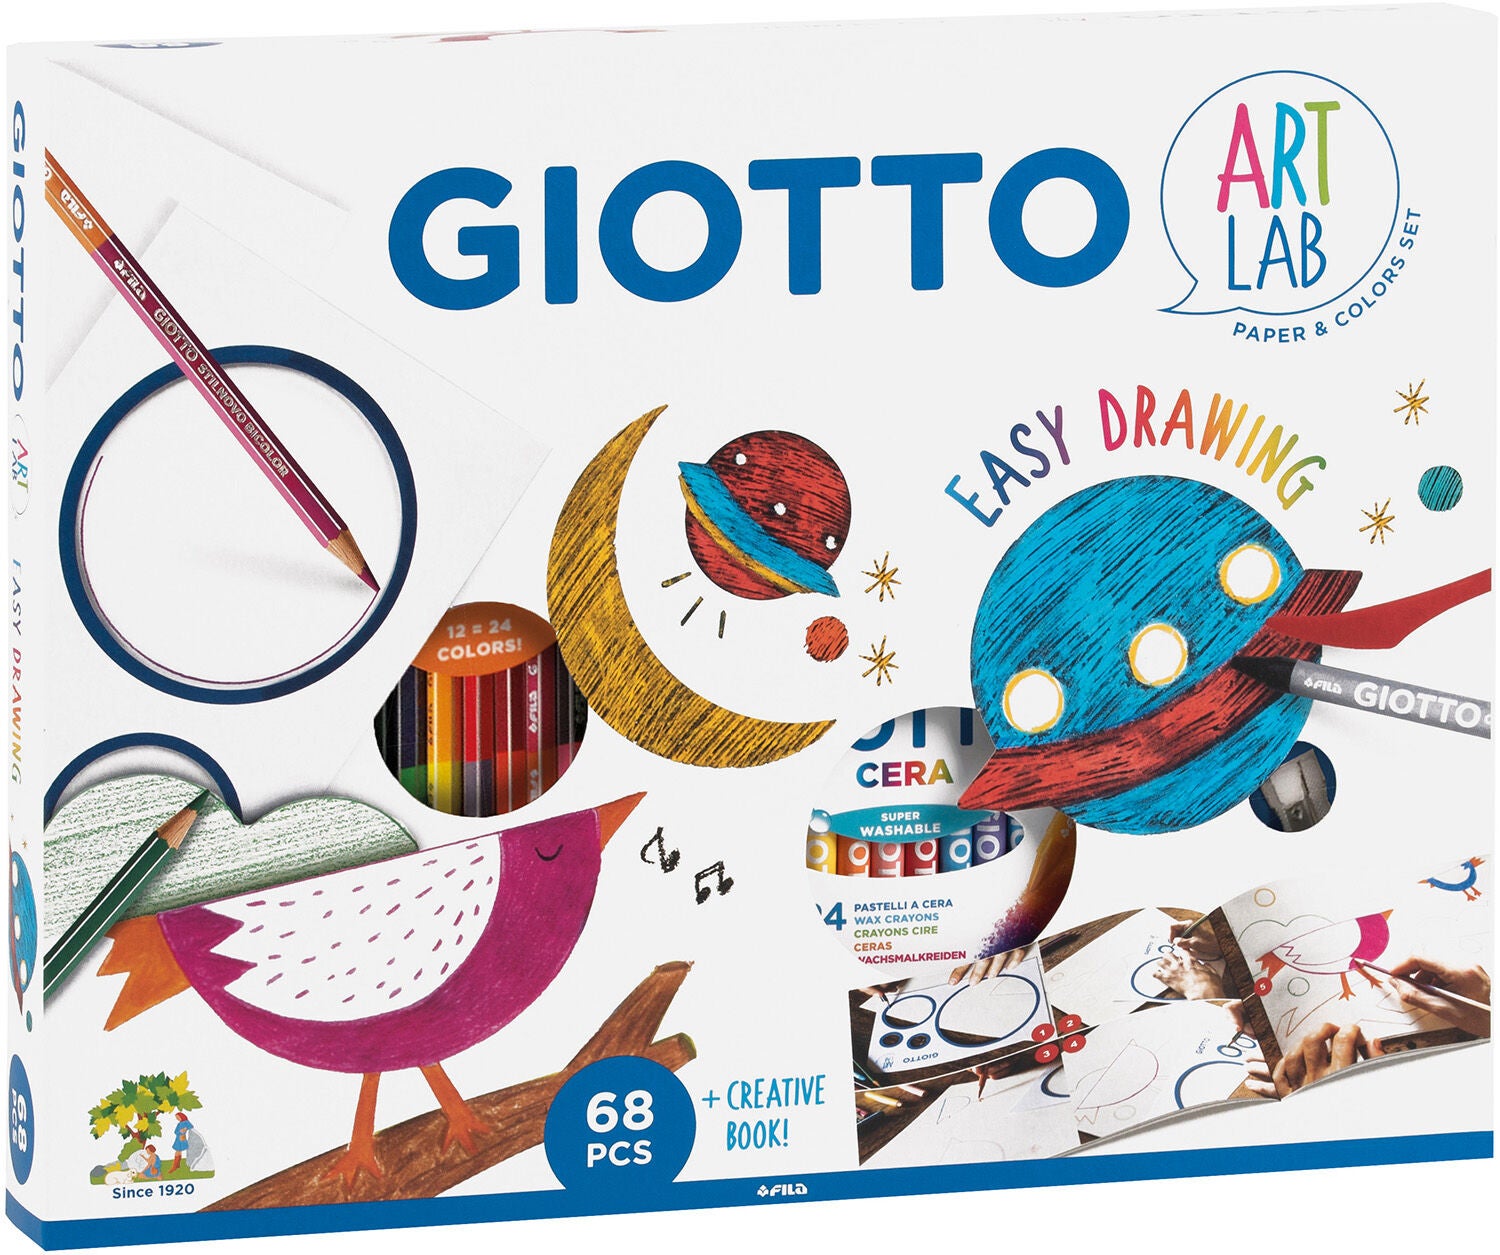 Giotto Art Lab Easy Drawing Malbuch von Giotto